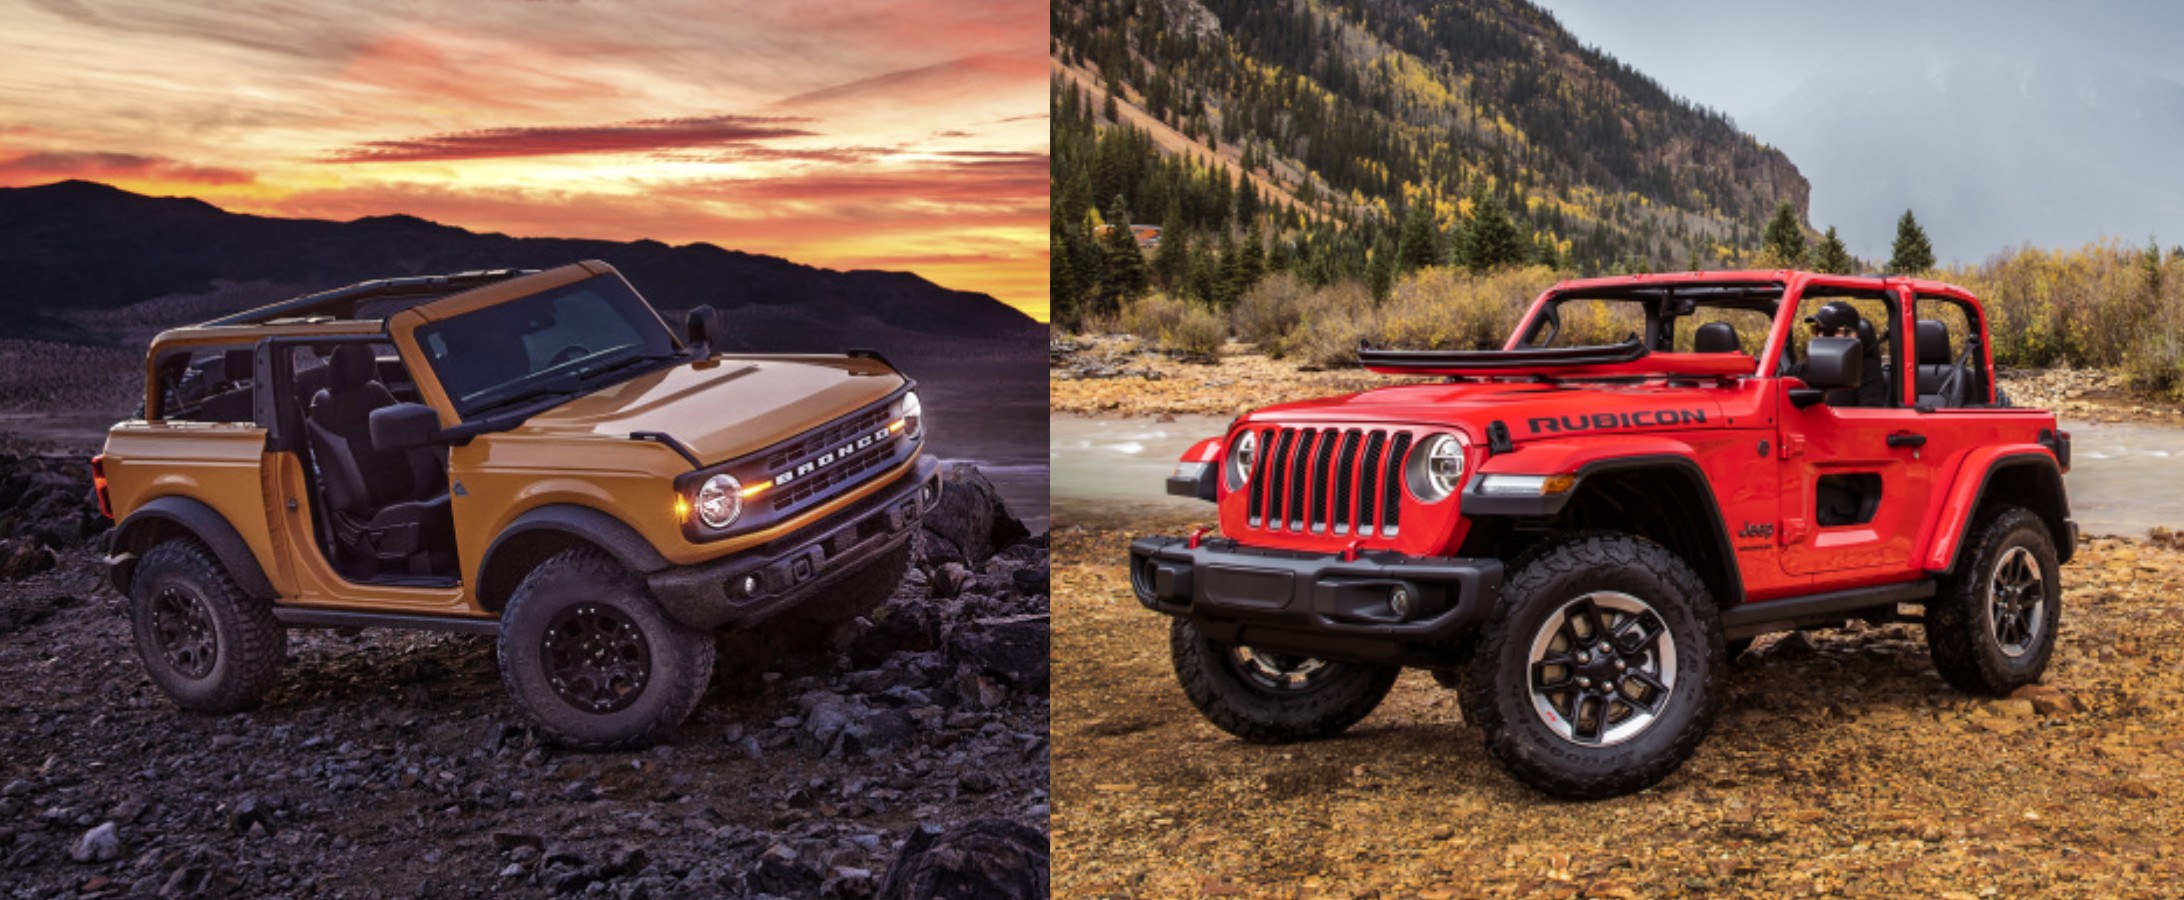 2021 Ford Bronco vs. Jeep Wrangler Comparison: Which One ...